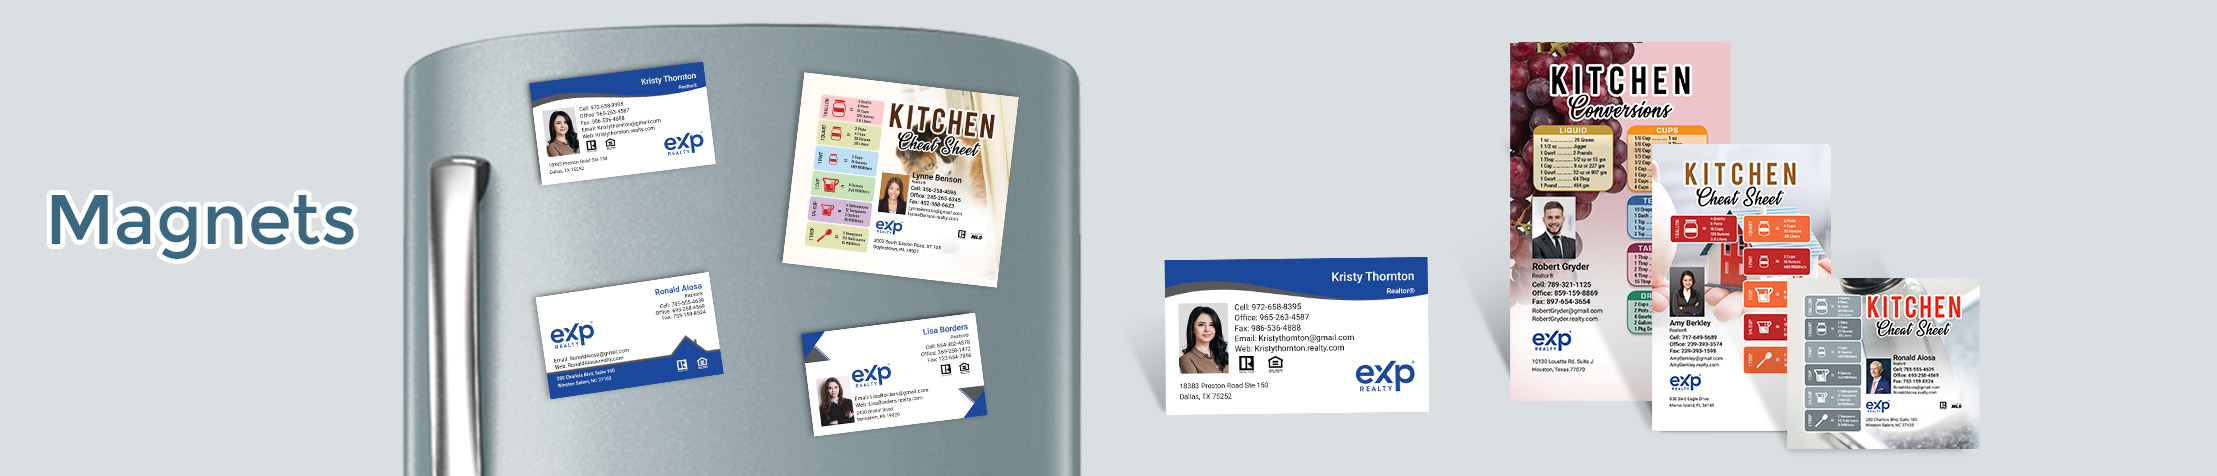 eX Real Estate Magnets - eX Business Card Magnets, Car magnets | BestPrintBuy.com